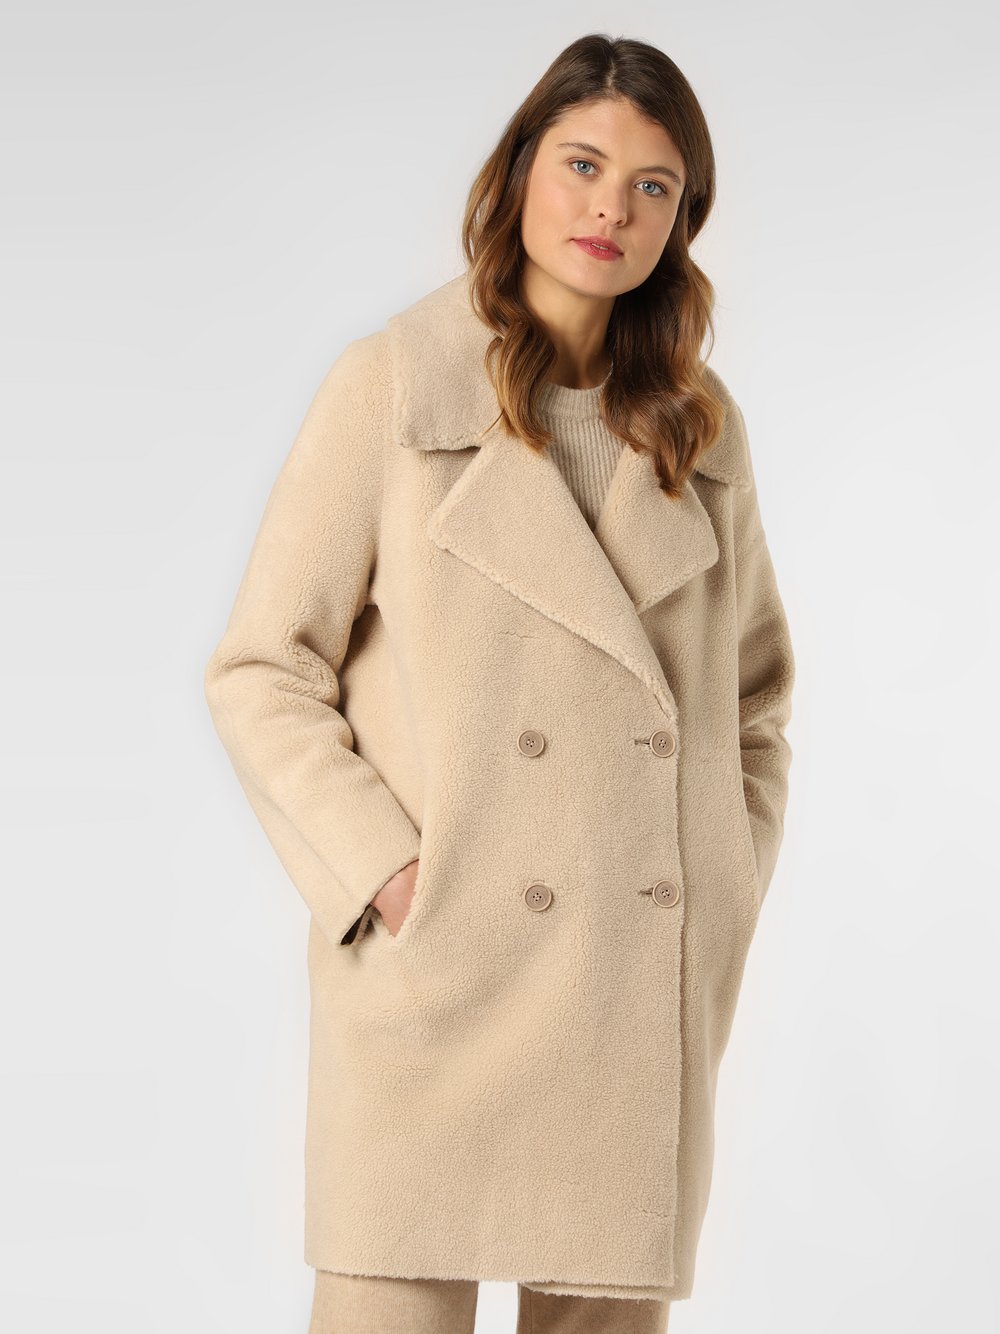 Esprit Collection - Damski płaszcz dwustronny, beżowy